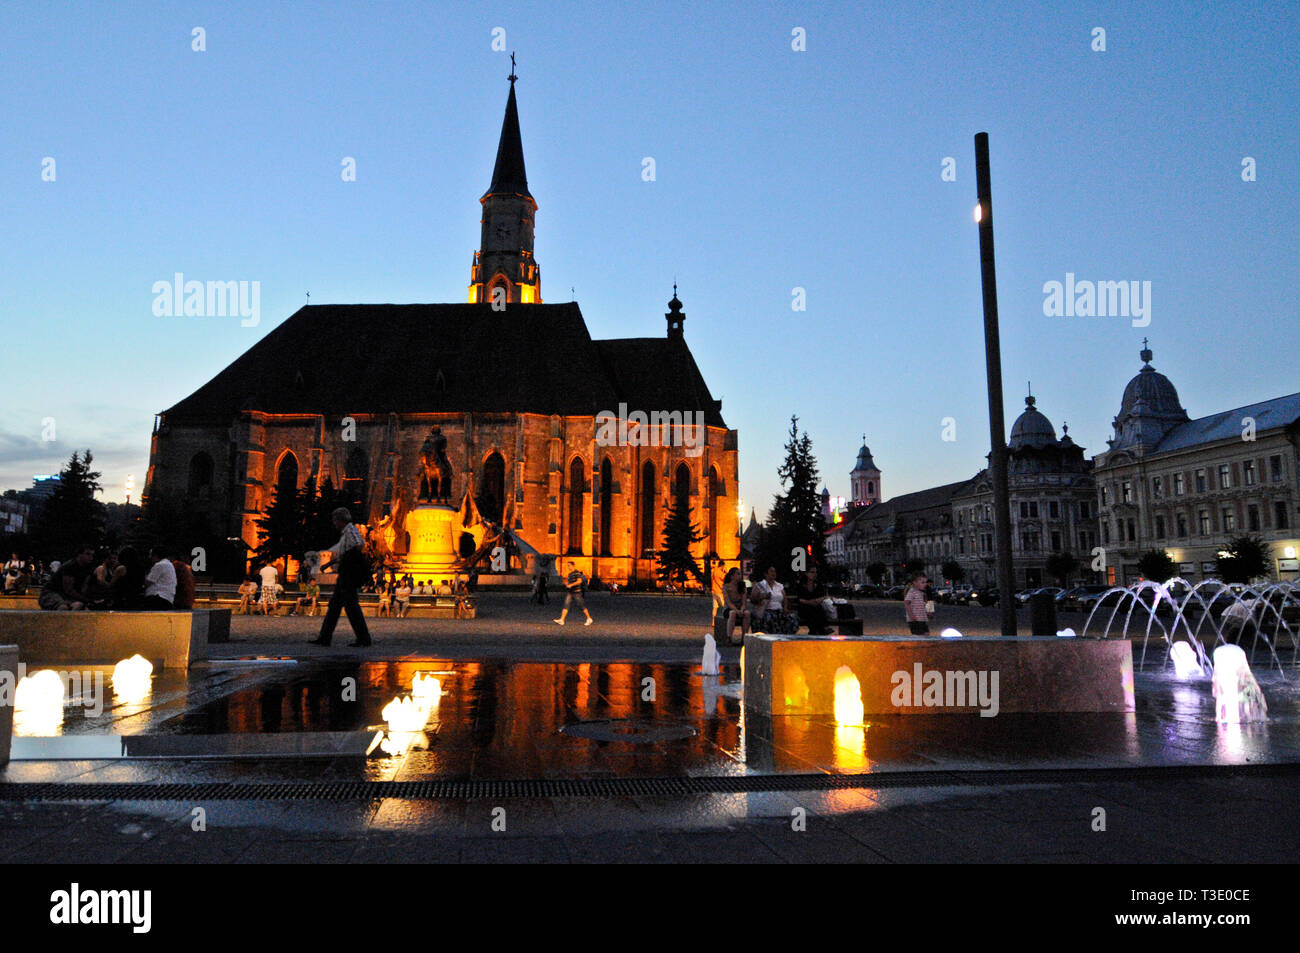 Chiesa di San Michele in Piazza Unirii (Piazza dell'Unione) al crepuscolo. Cluj-Napoca, Romania Foto Stock